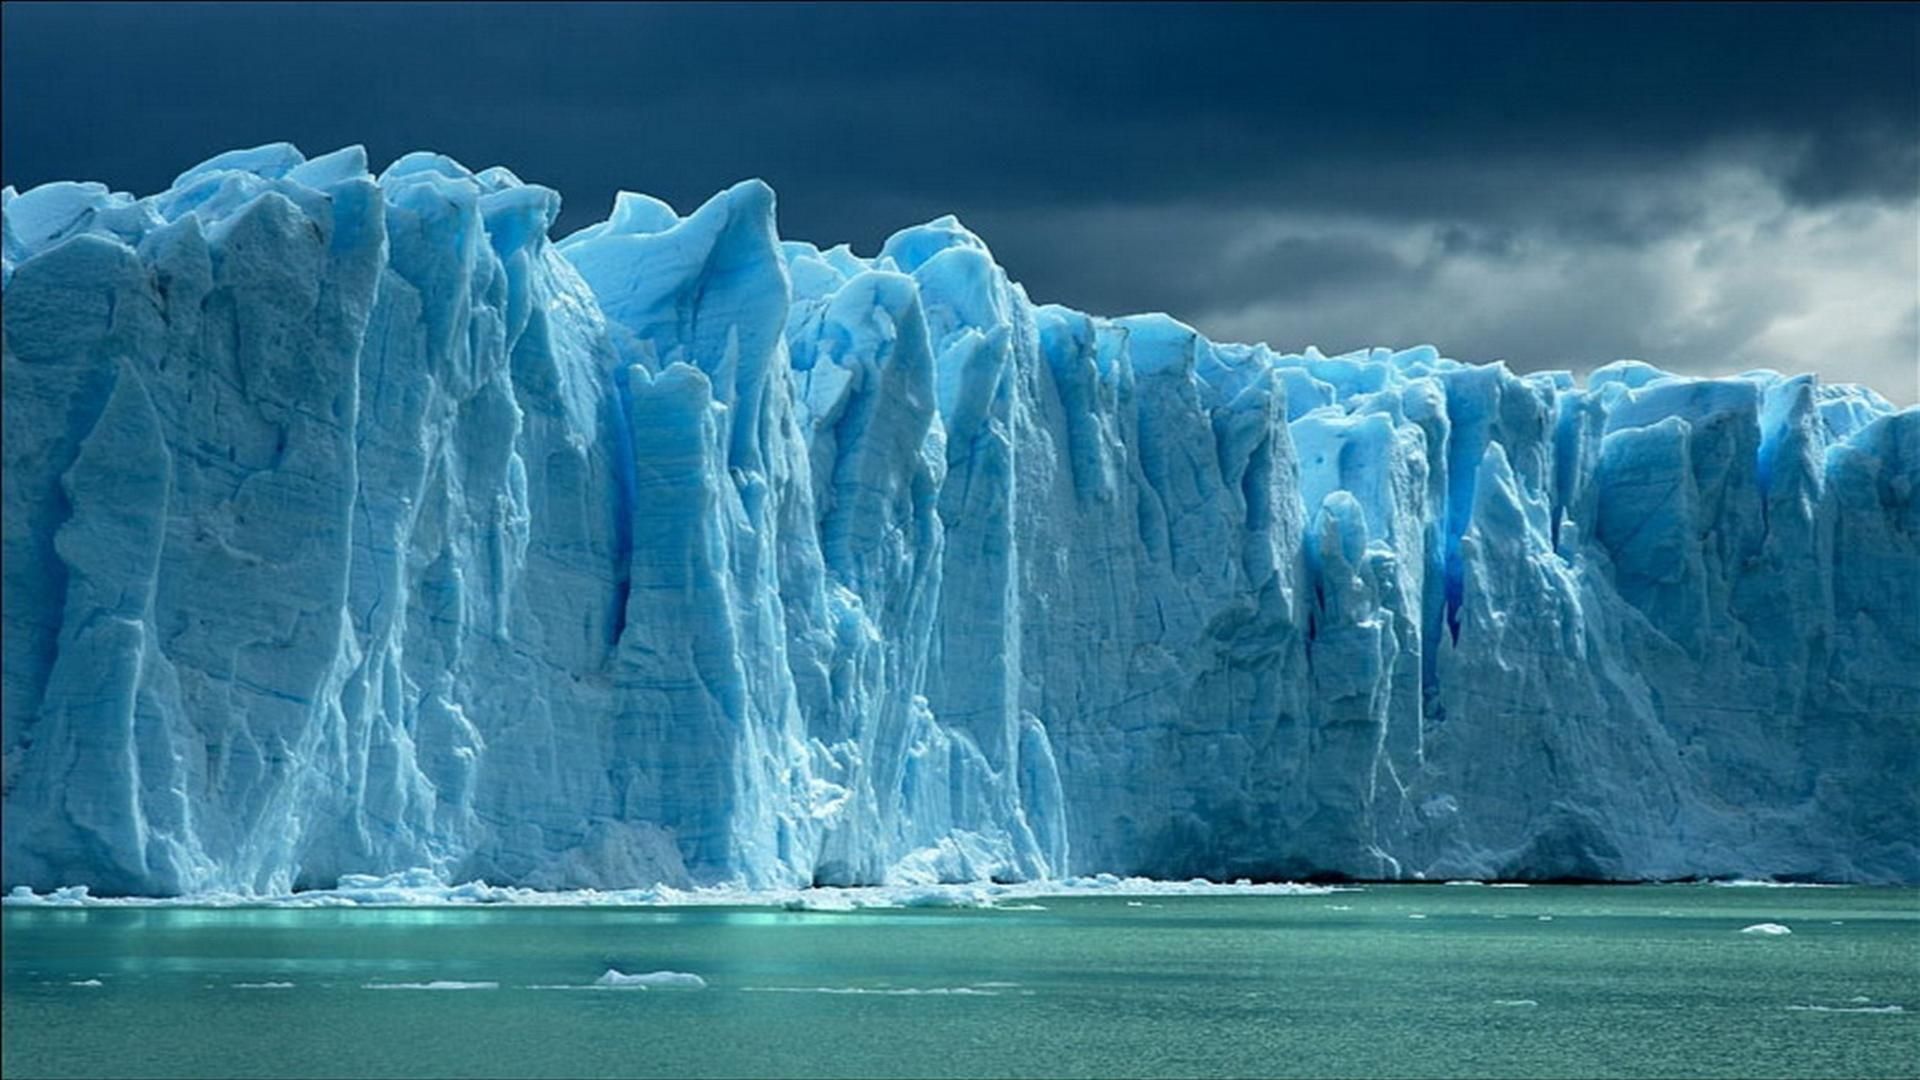 iceberg wallpaper - Recherche Google | Photography | Pinterest ...